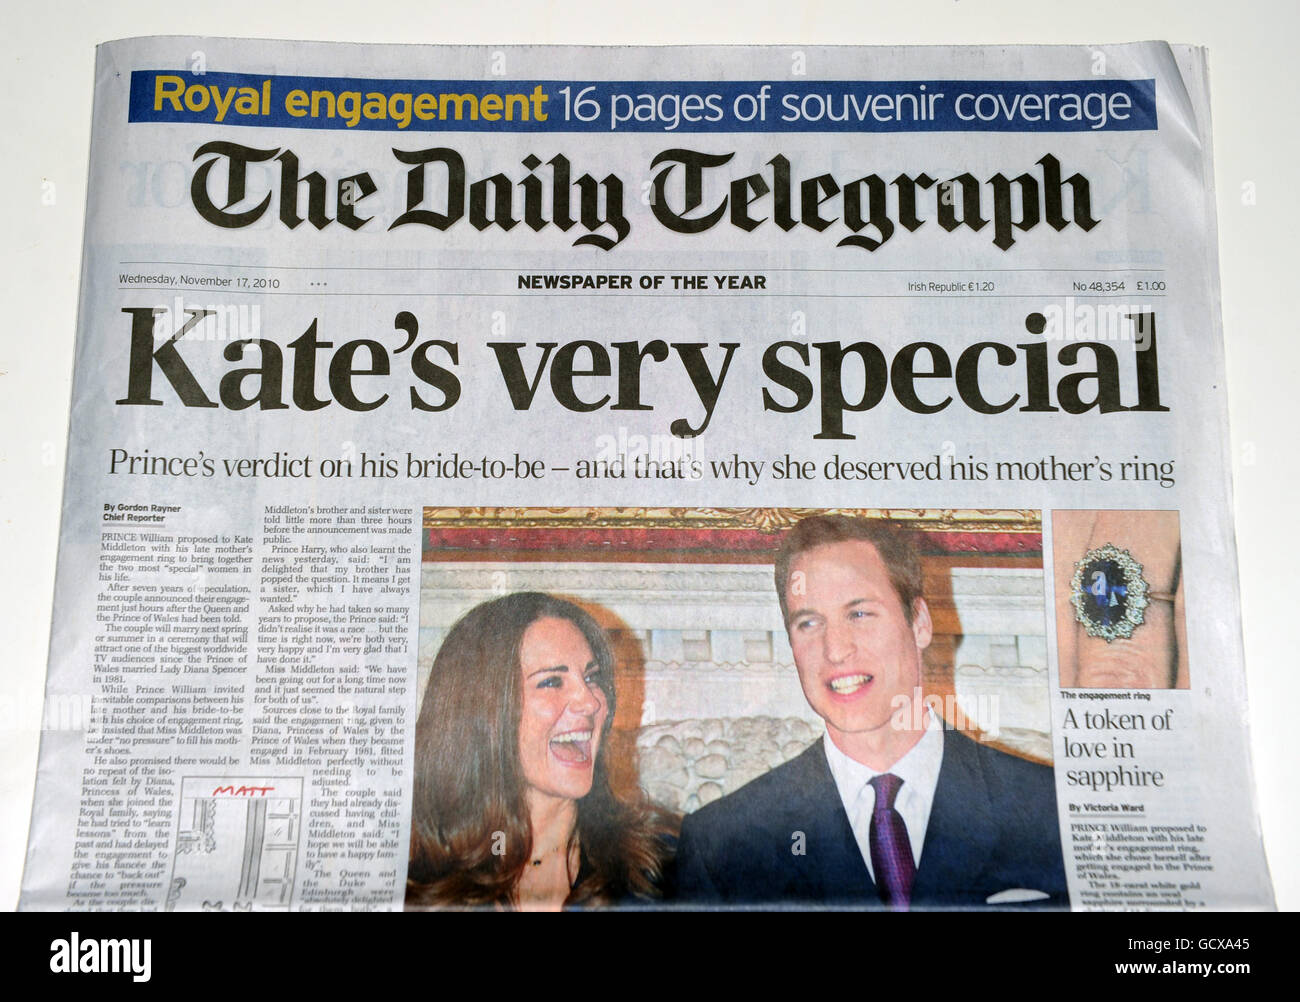 Couverture de la presse britannique de l'engagement du Prince William and Kate Middleton dans le Daily Telegraph Banque D'Images